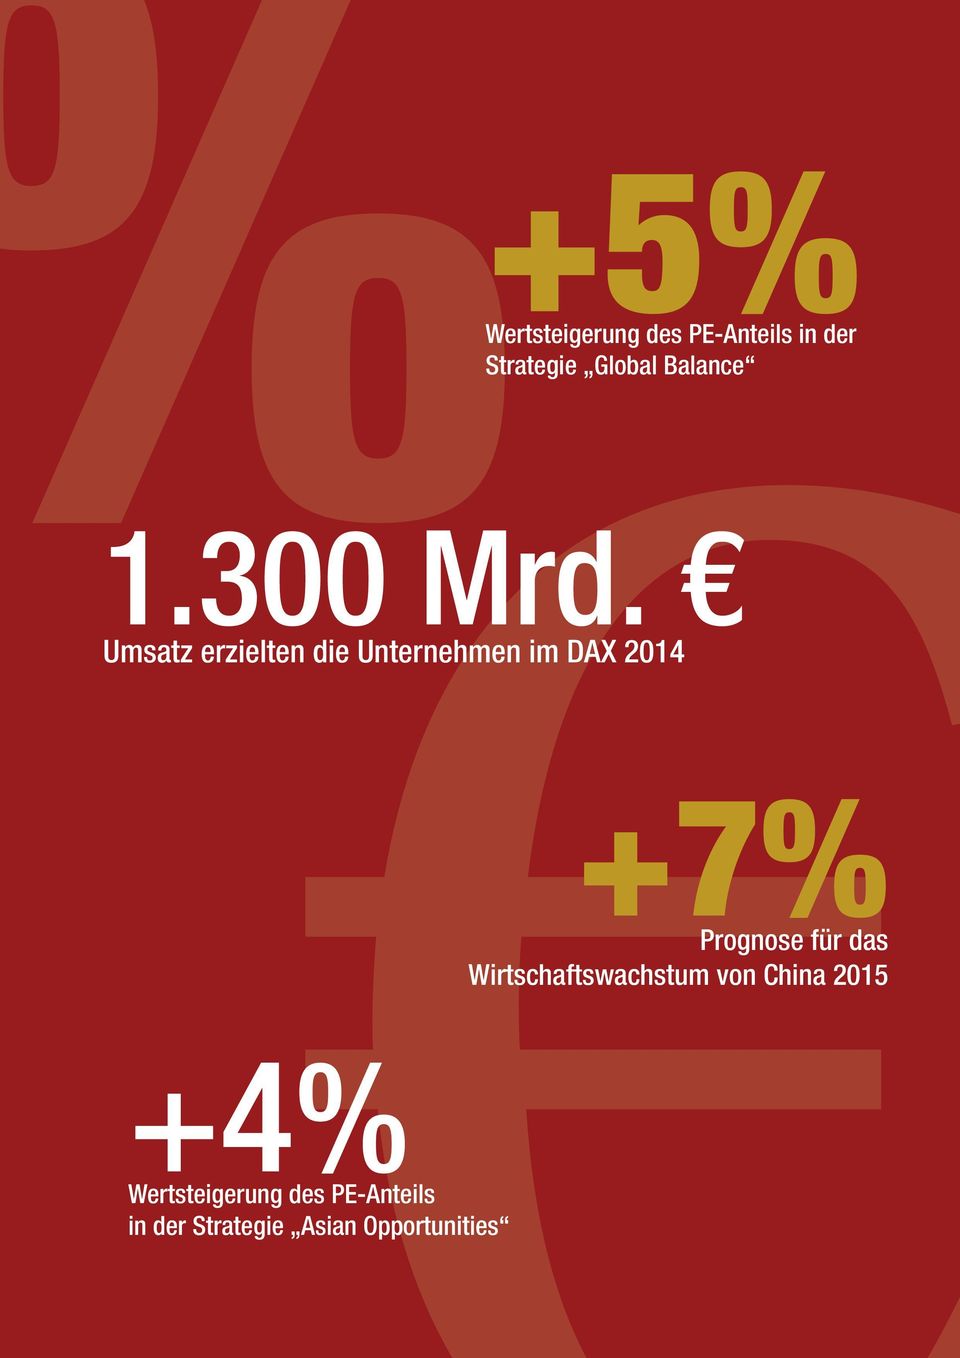 Umsatz erzielten die Unternehmen im DAX 2014 +4%